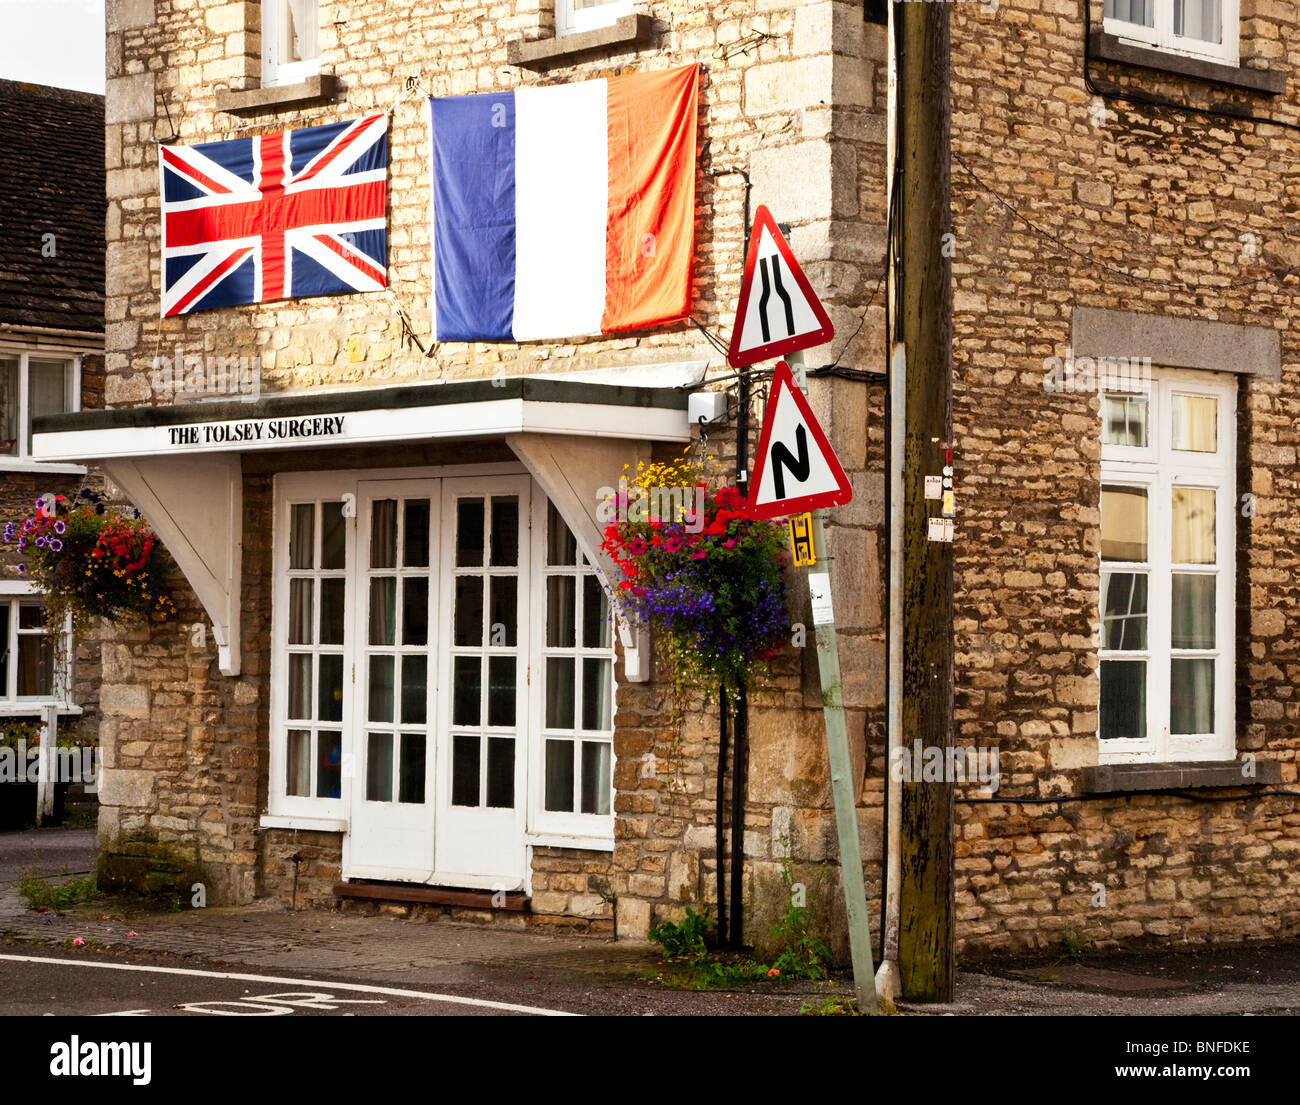 Die Dorf-Chirurgie in Sherston, Wiltshire, geschmückt mit einem Union Jack und Französisch Tricolor für den jährlichen Wettbewerb der Boule-Tag. Stockfoto